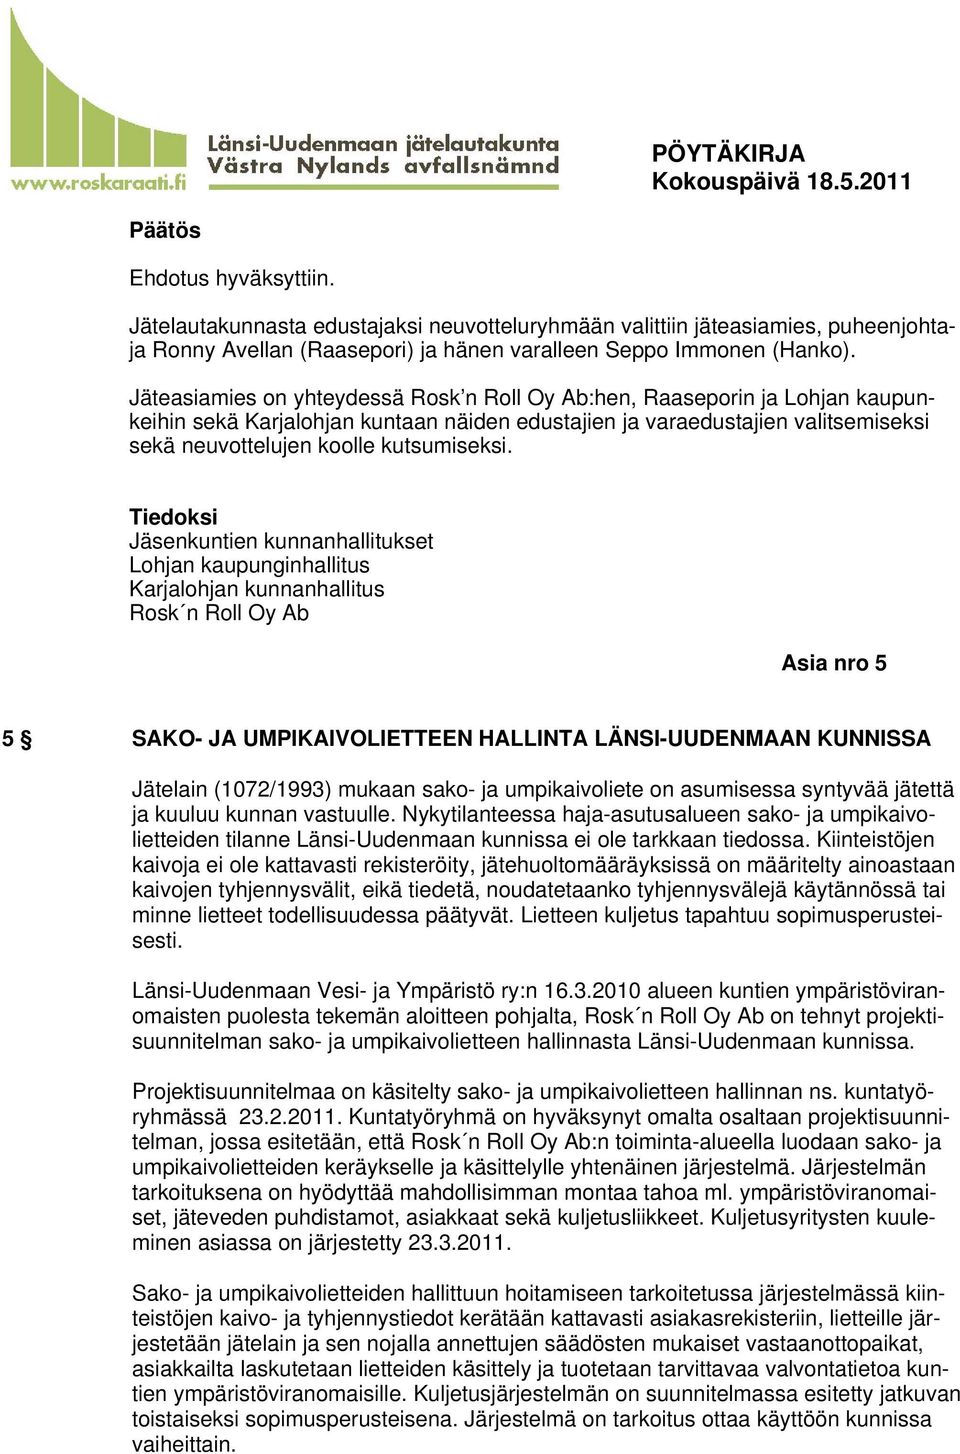 Jäsenkuntien kunnanhallitukset Lohjan kaupunginhallitus Karjalohjan kunnanhallitus Rosk n Roll Oy Ab Asia nro 5 5 SAKO- JA UMPIKAIVOLIETTEEN HALLINTA LÄNSI-UUDENMAAN KUNNISSA Jätelain (1072/1993)